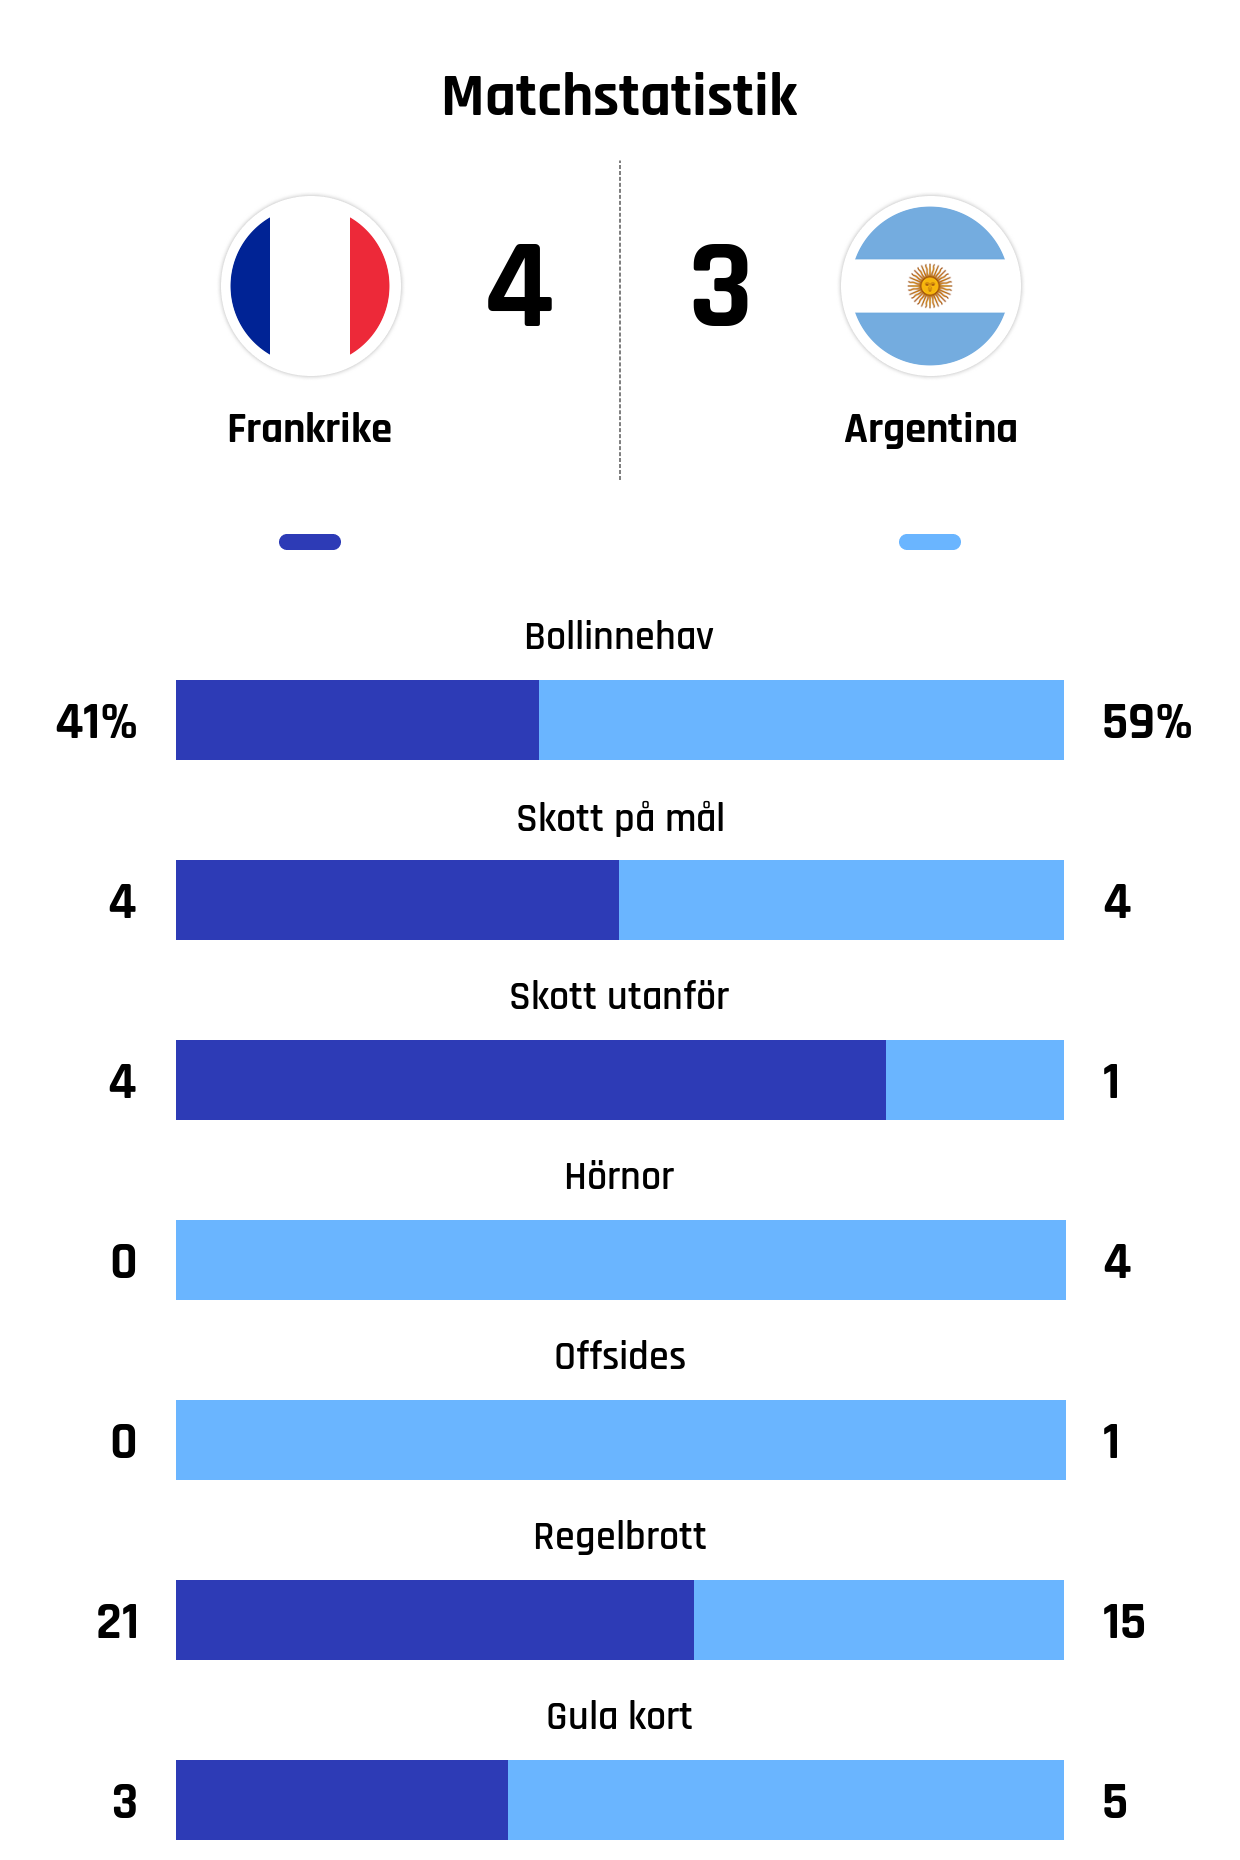 Bollinnehav 41%-59%
Skott på mål 4-4
Skott utanför 4-1
Hörnor 0-4
Offsides 0-1
Regelbrott 21-15
Gula kort 3-5